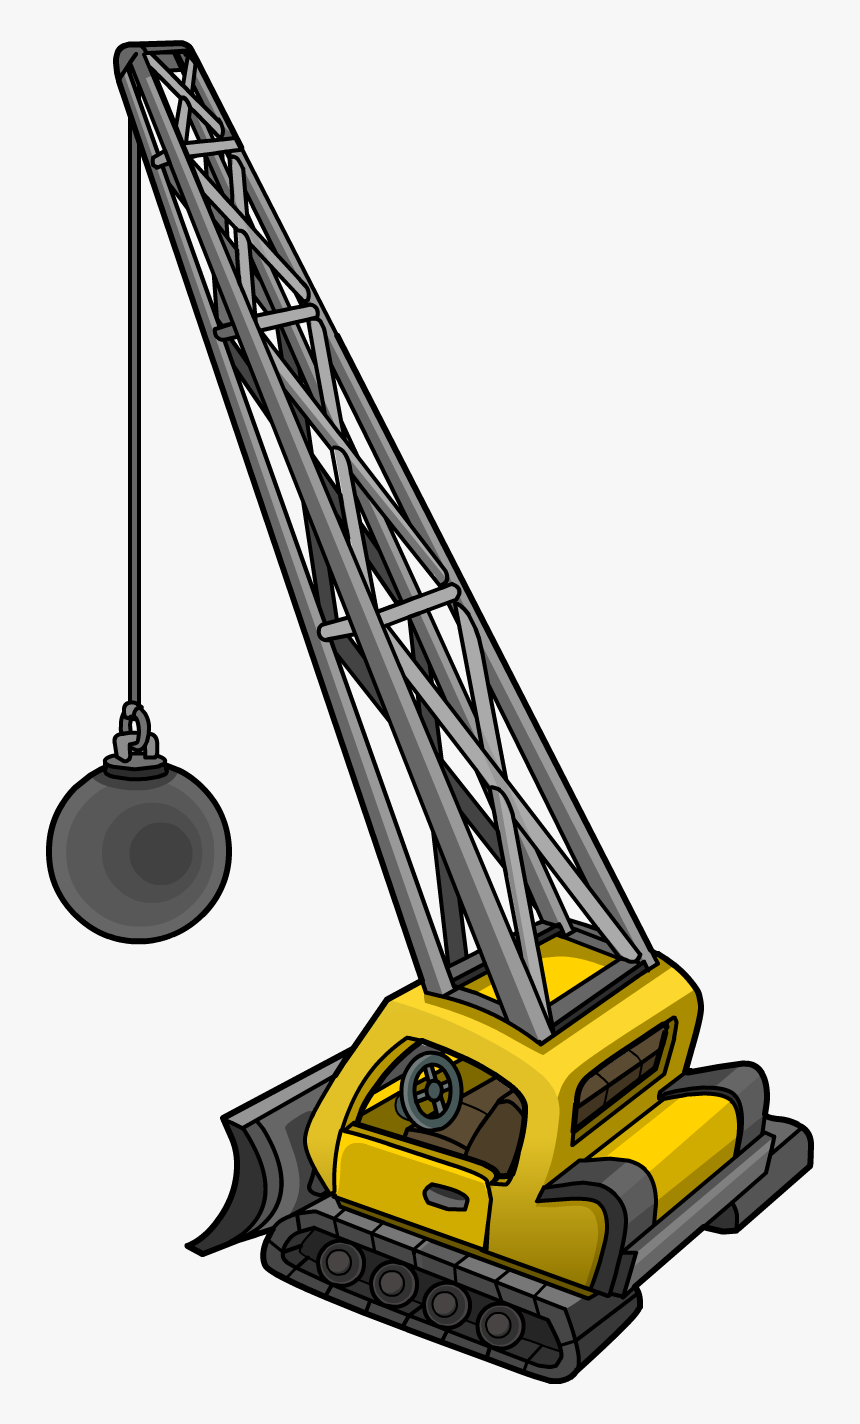 Crane Clipart Construction Equipment - Club Penguin Crane, HD Png Download, Free Download